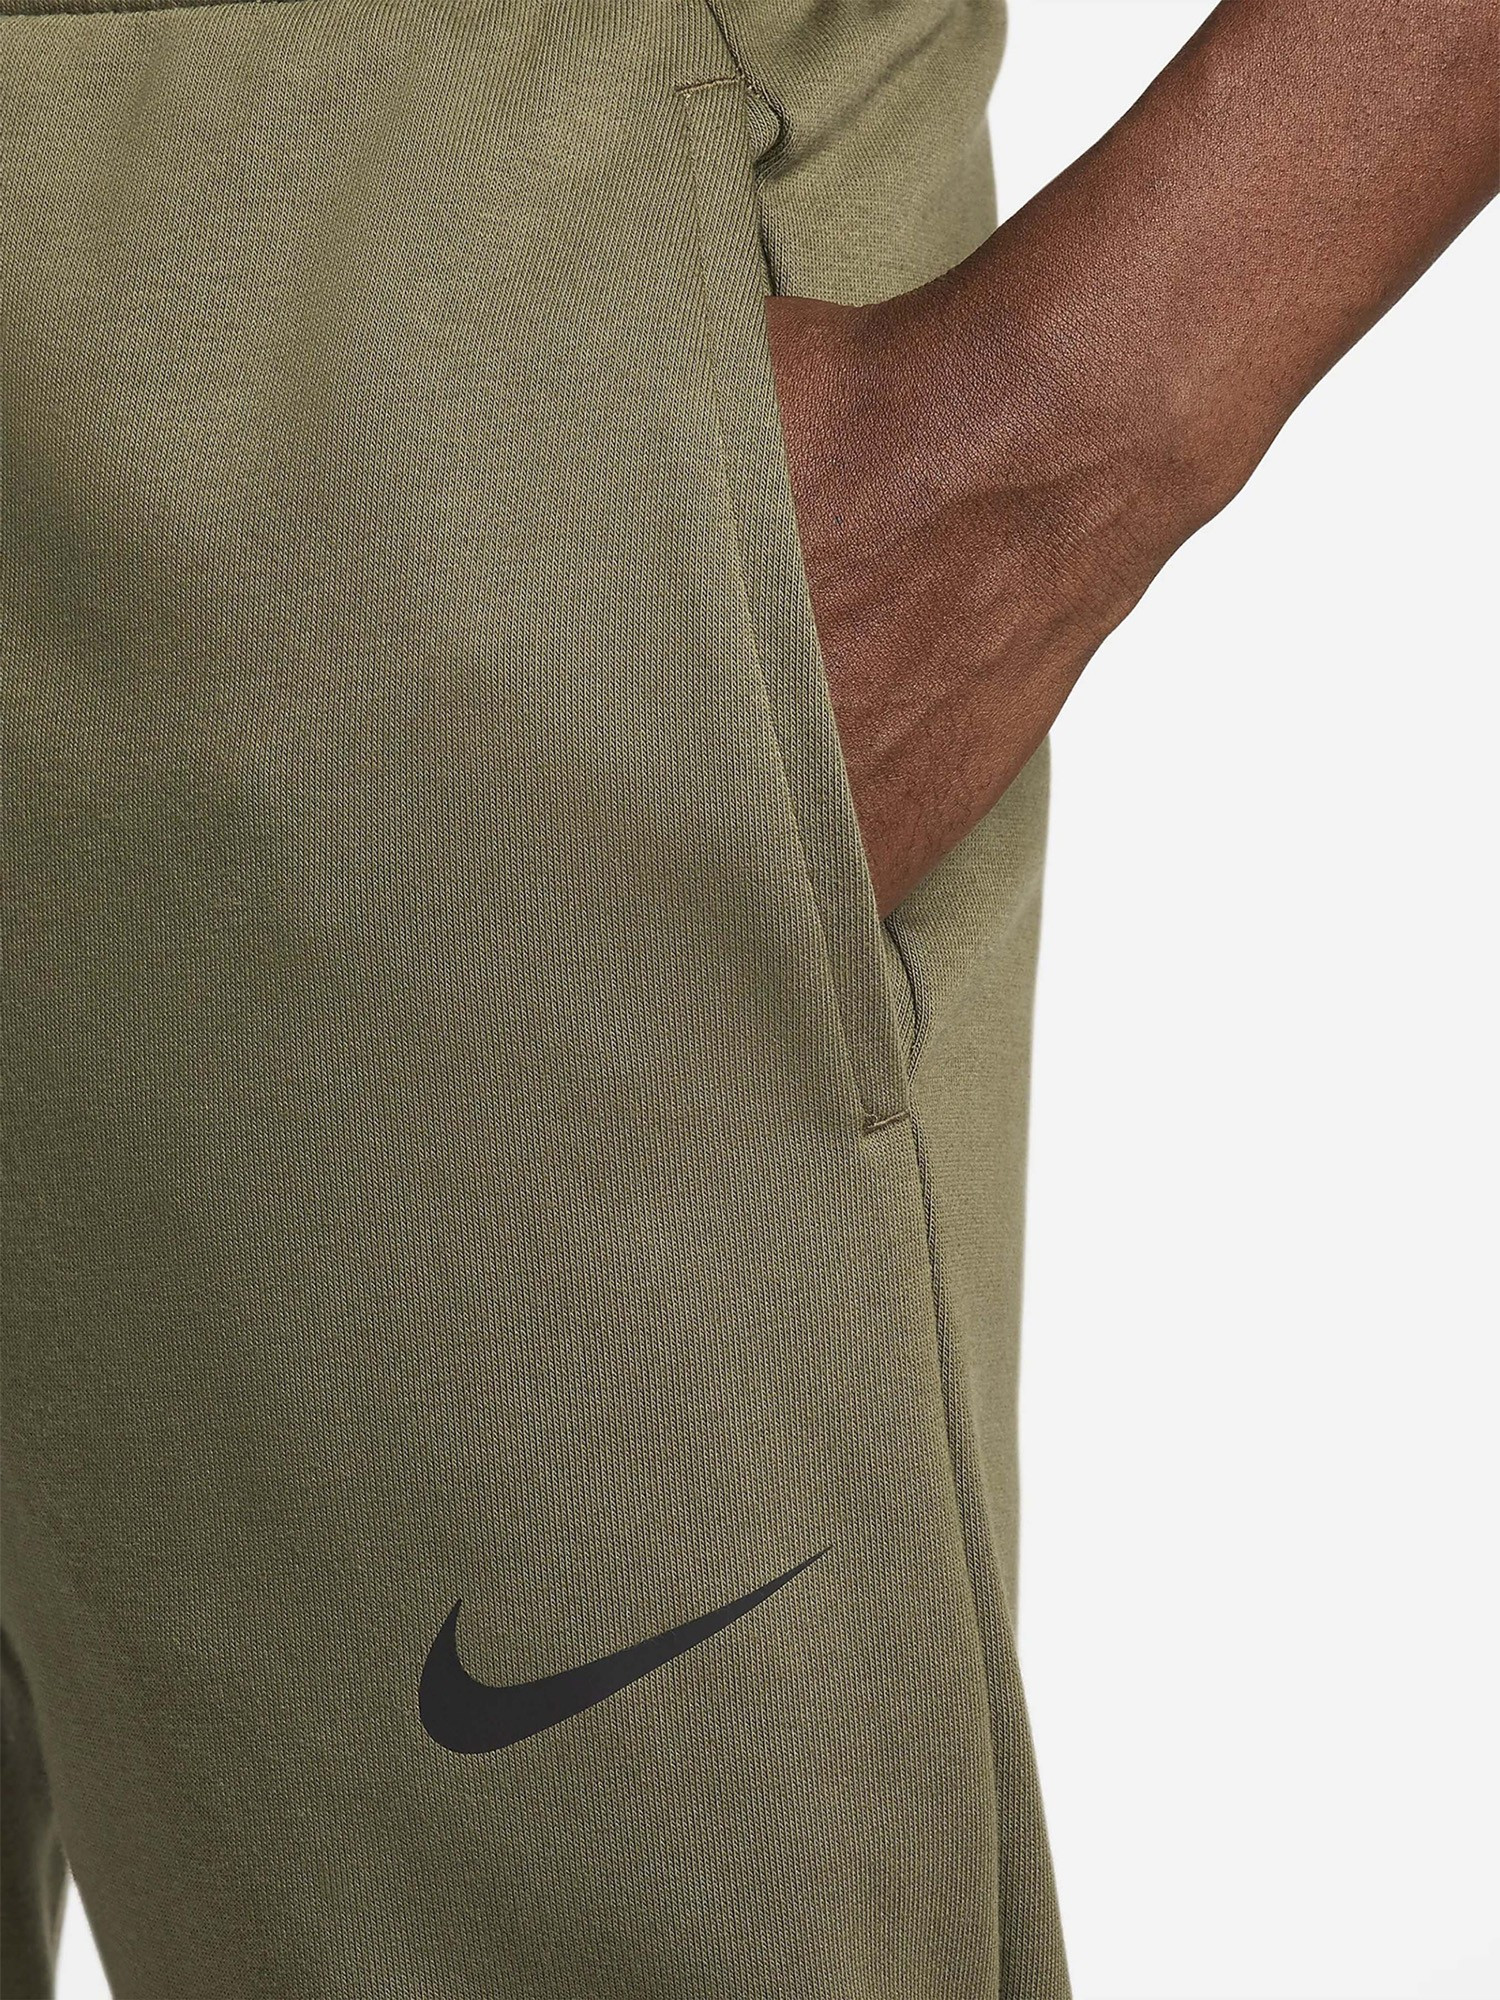 Штани чоловічі Nike Dri-FIT